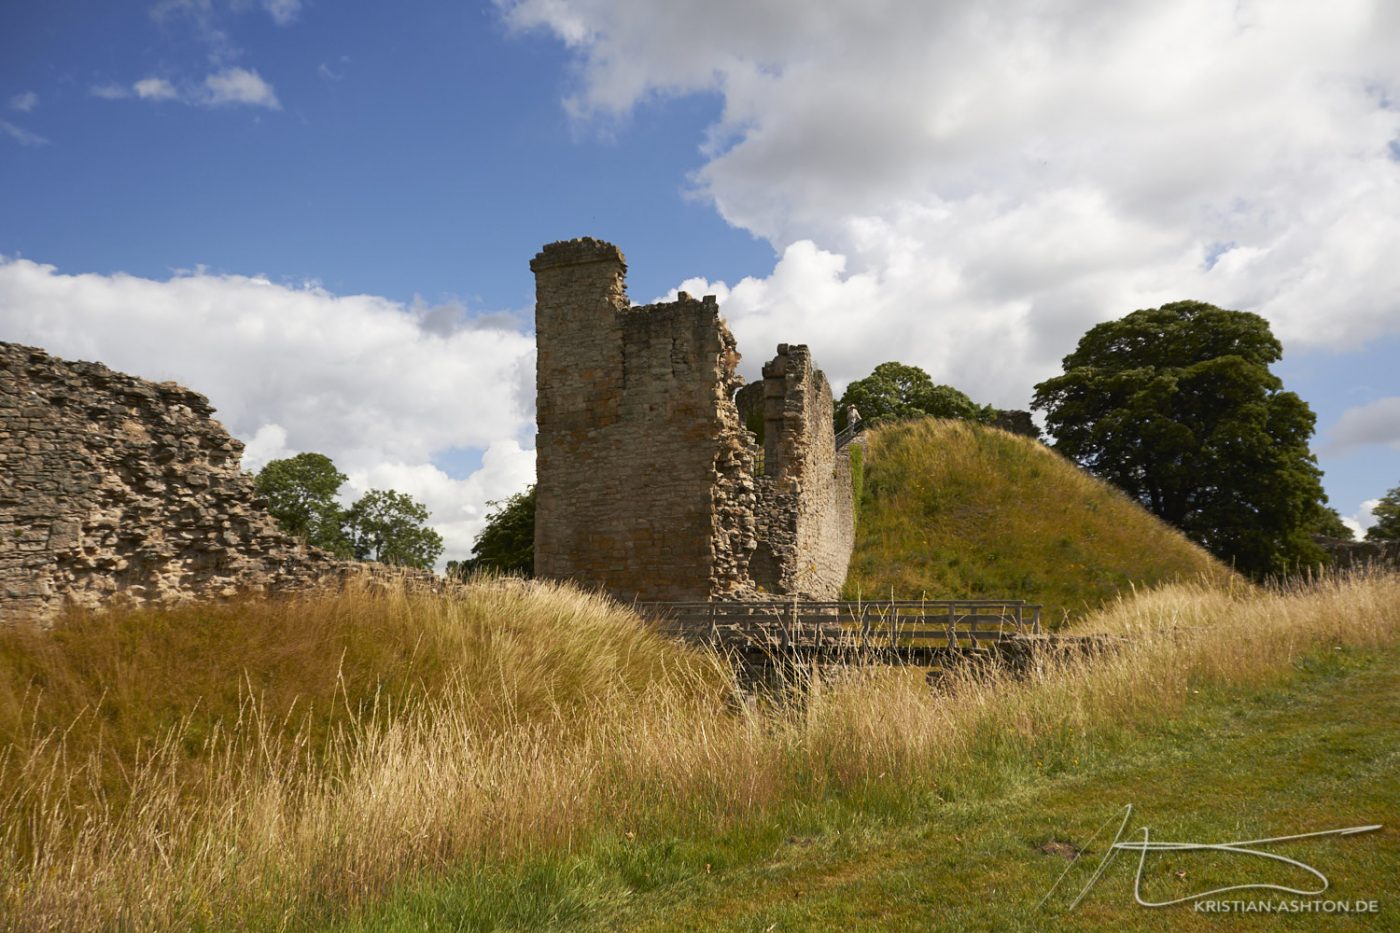 Pickering Castle - Die Ruine einer Motte aus dem 11. Jahrhundert